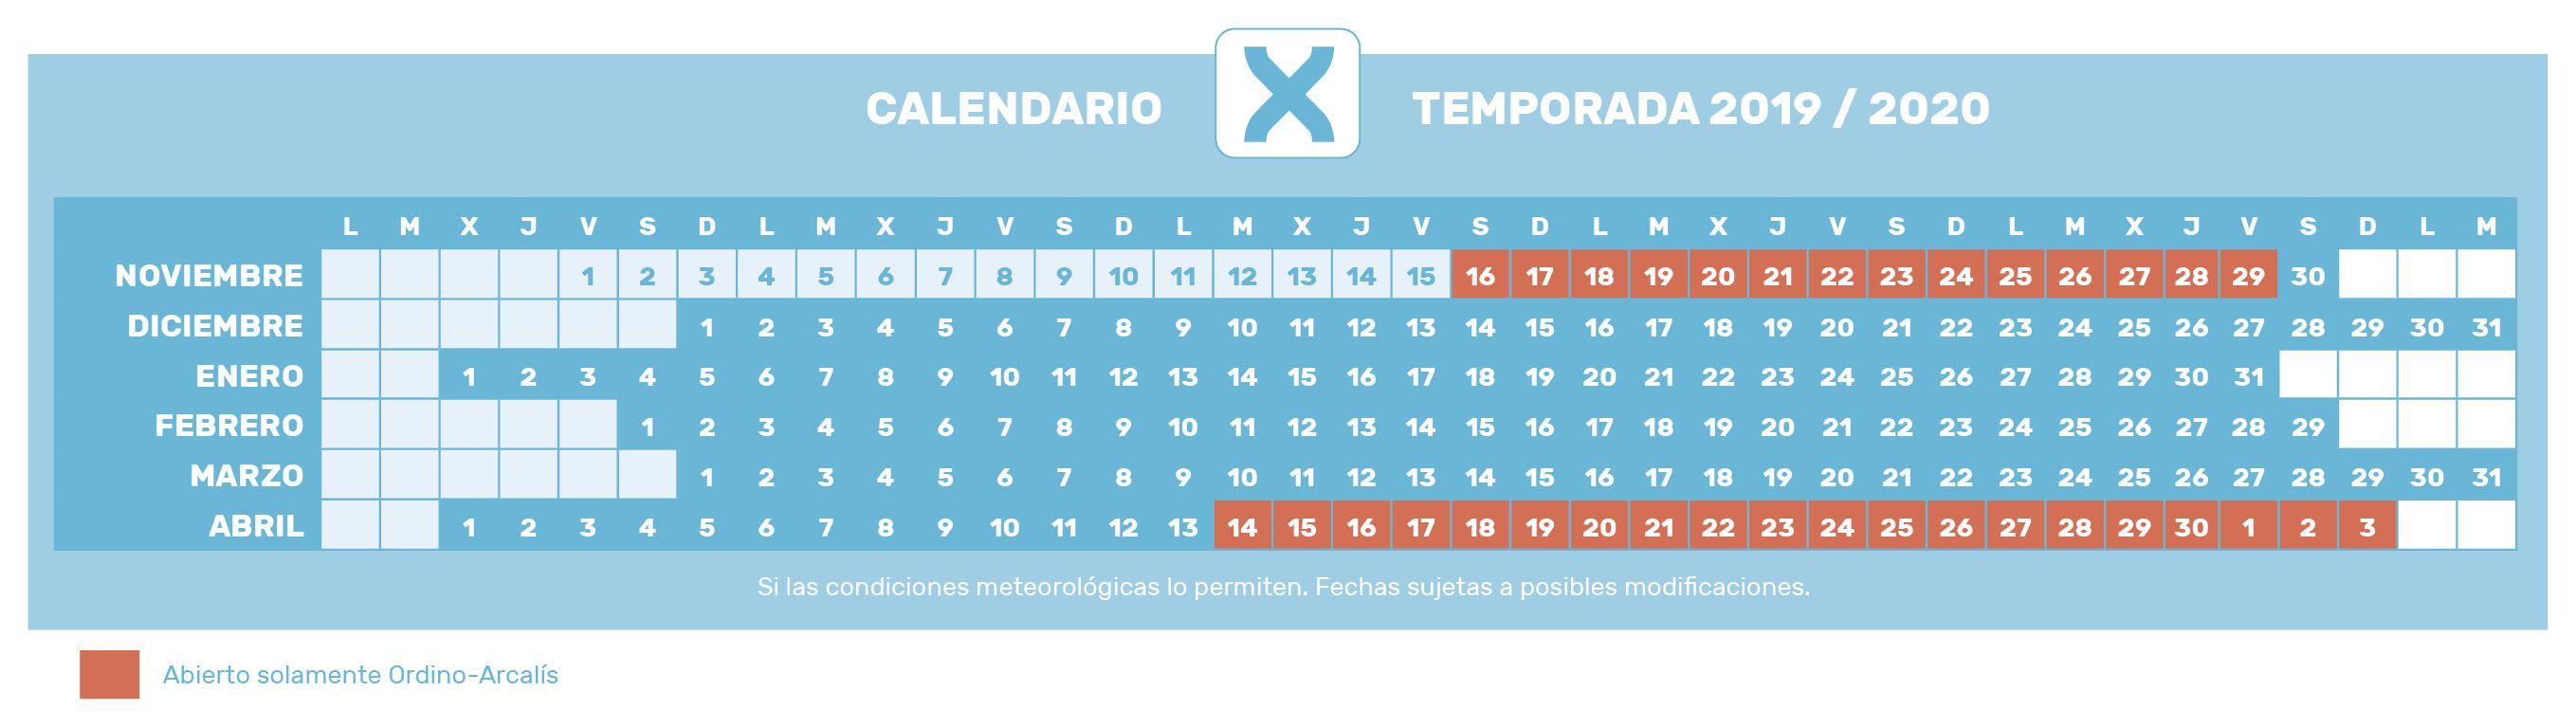 Calendario temporada 2019-2020 Grandvalira